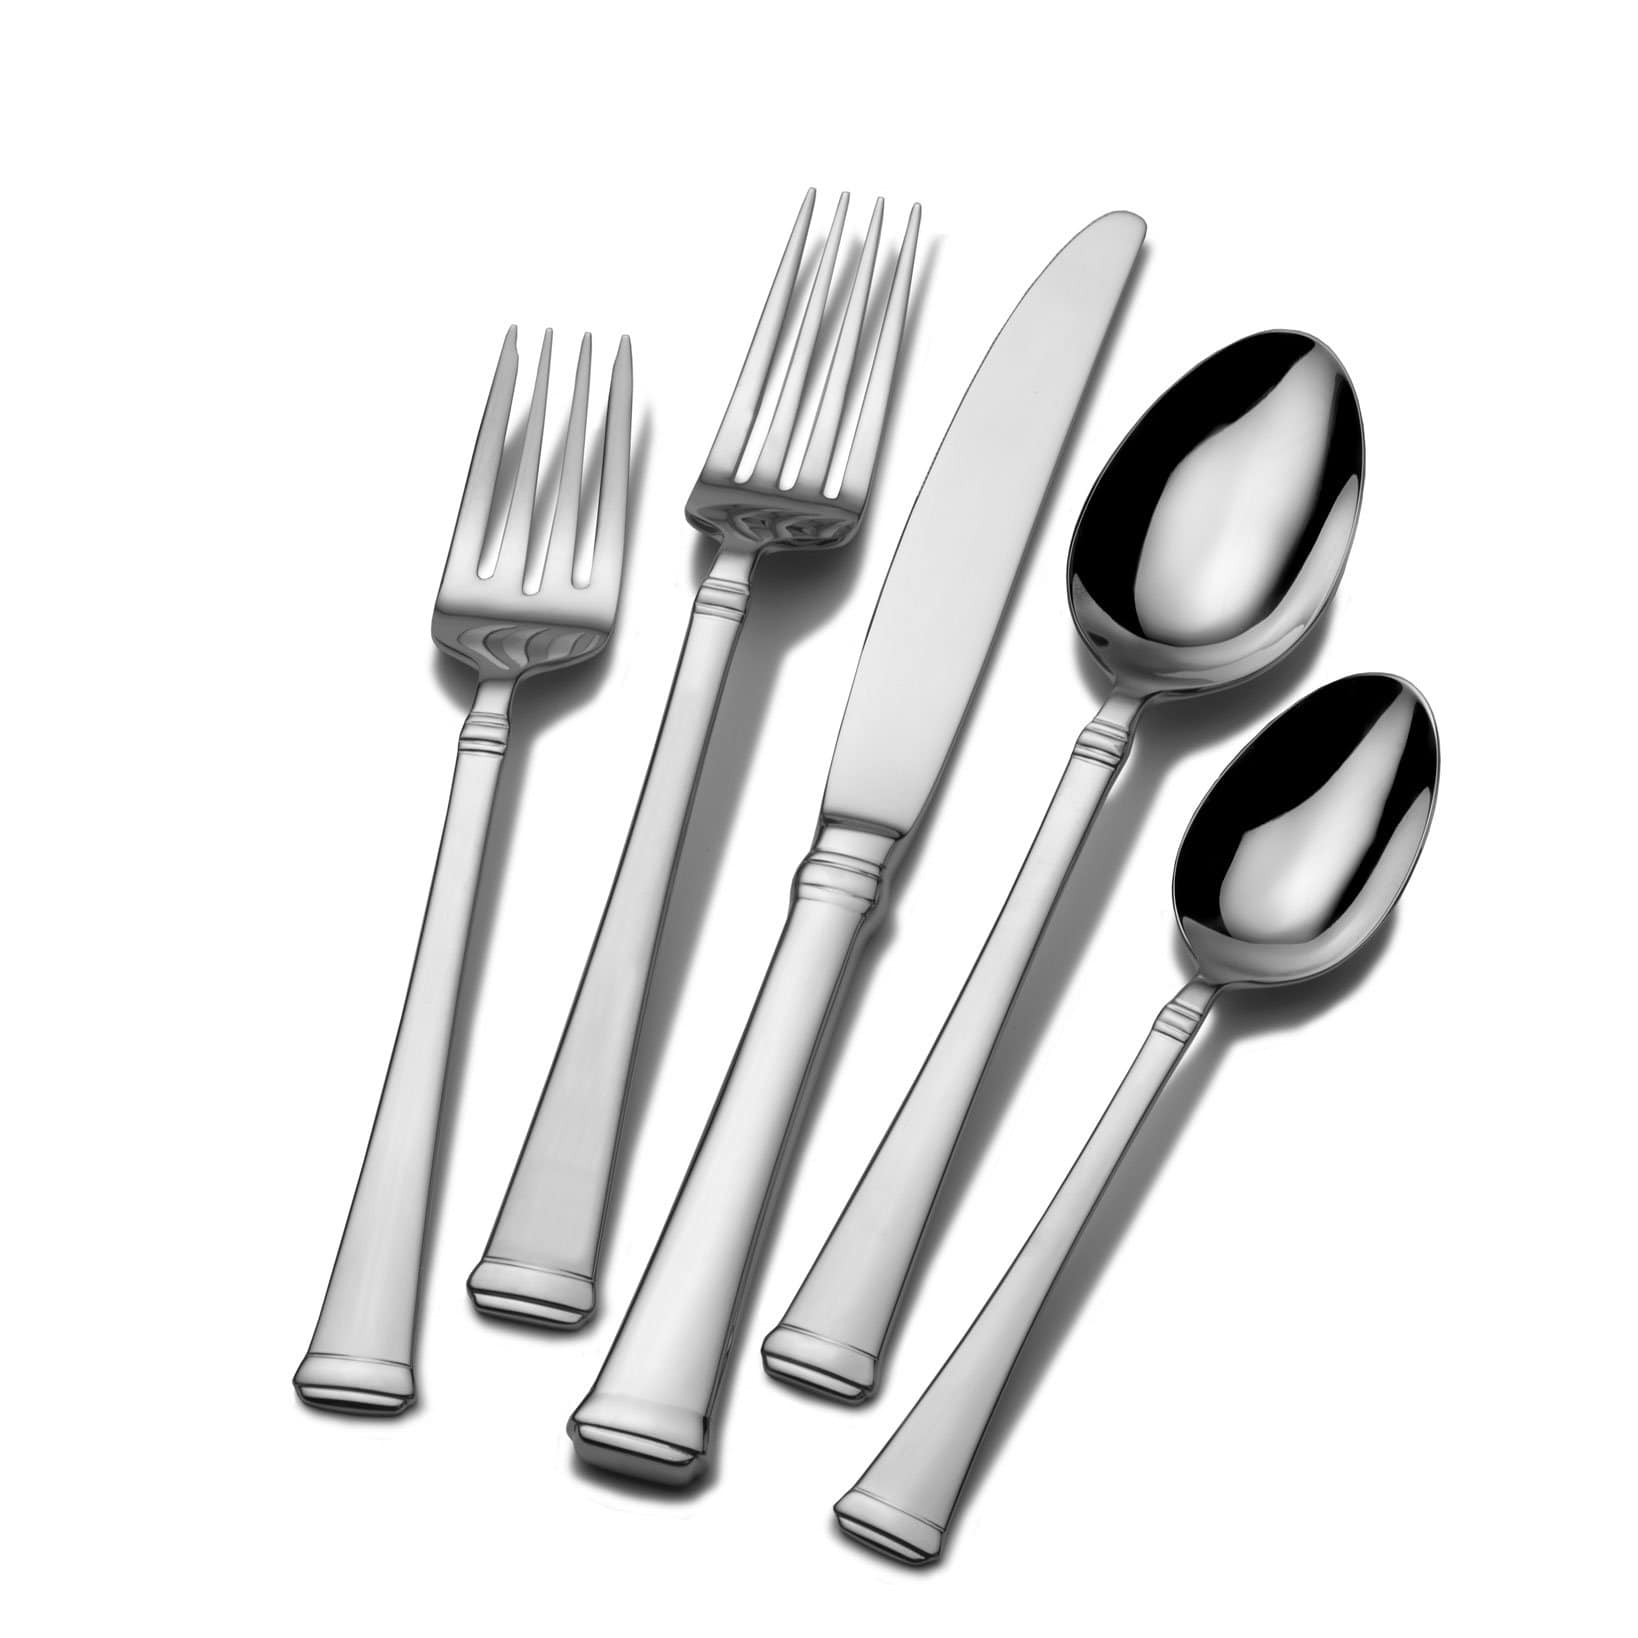 Black Stainless Steel Cutlery Sets 4/8/16 Piece Set Tableware